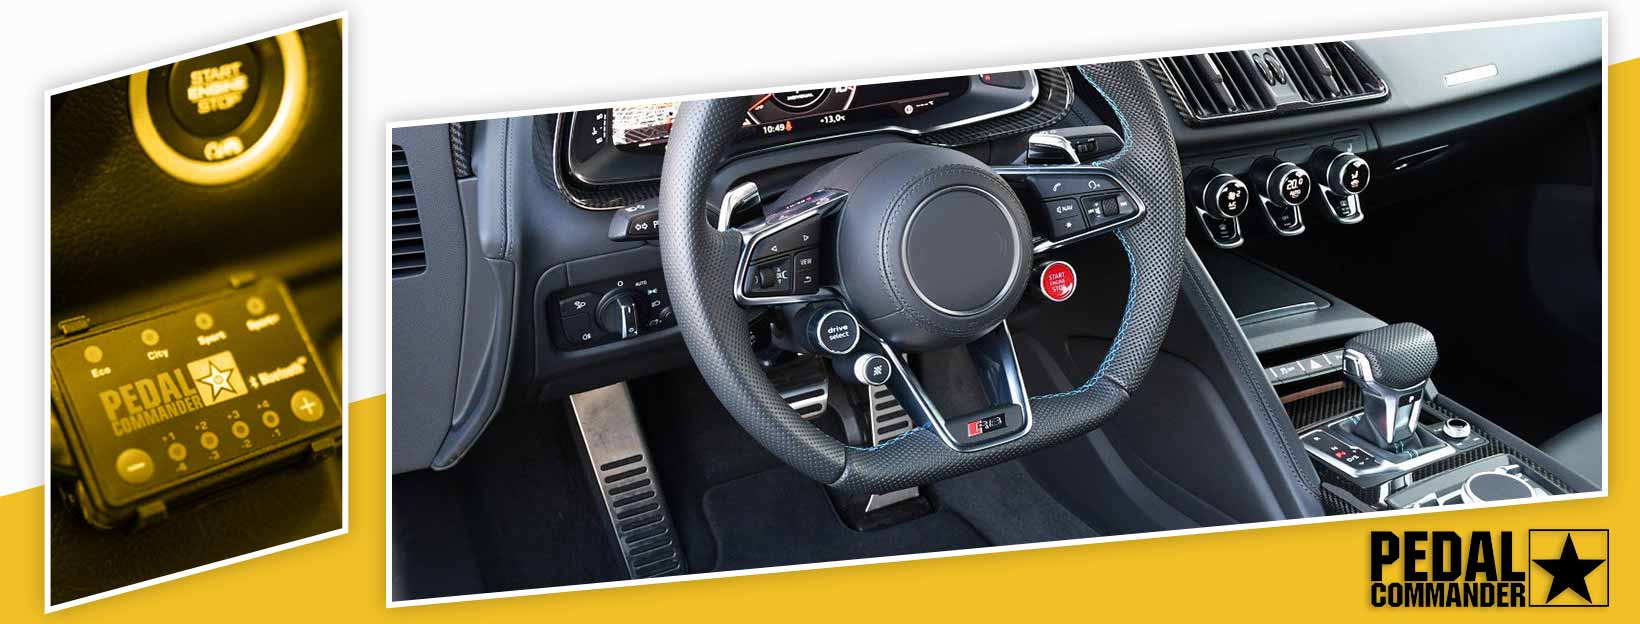 Pedal Commander for Audi RSQ8 - interior